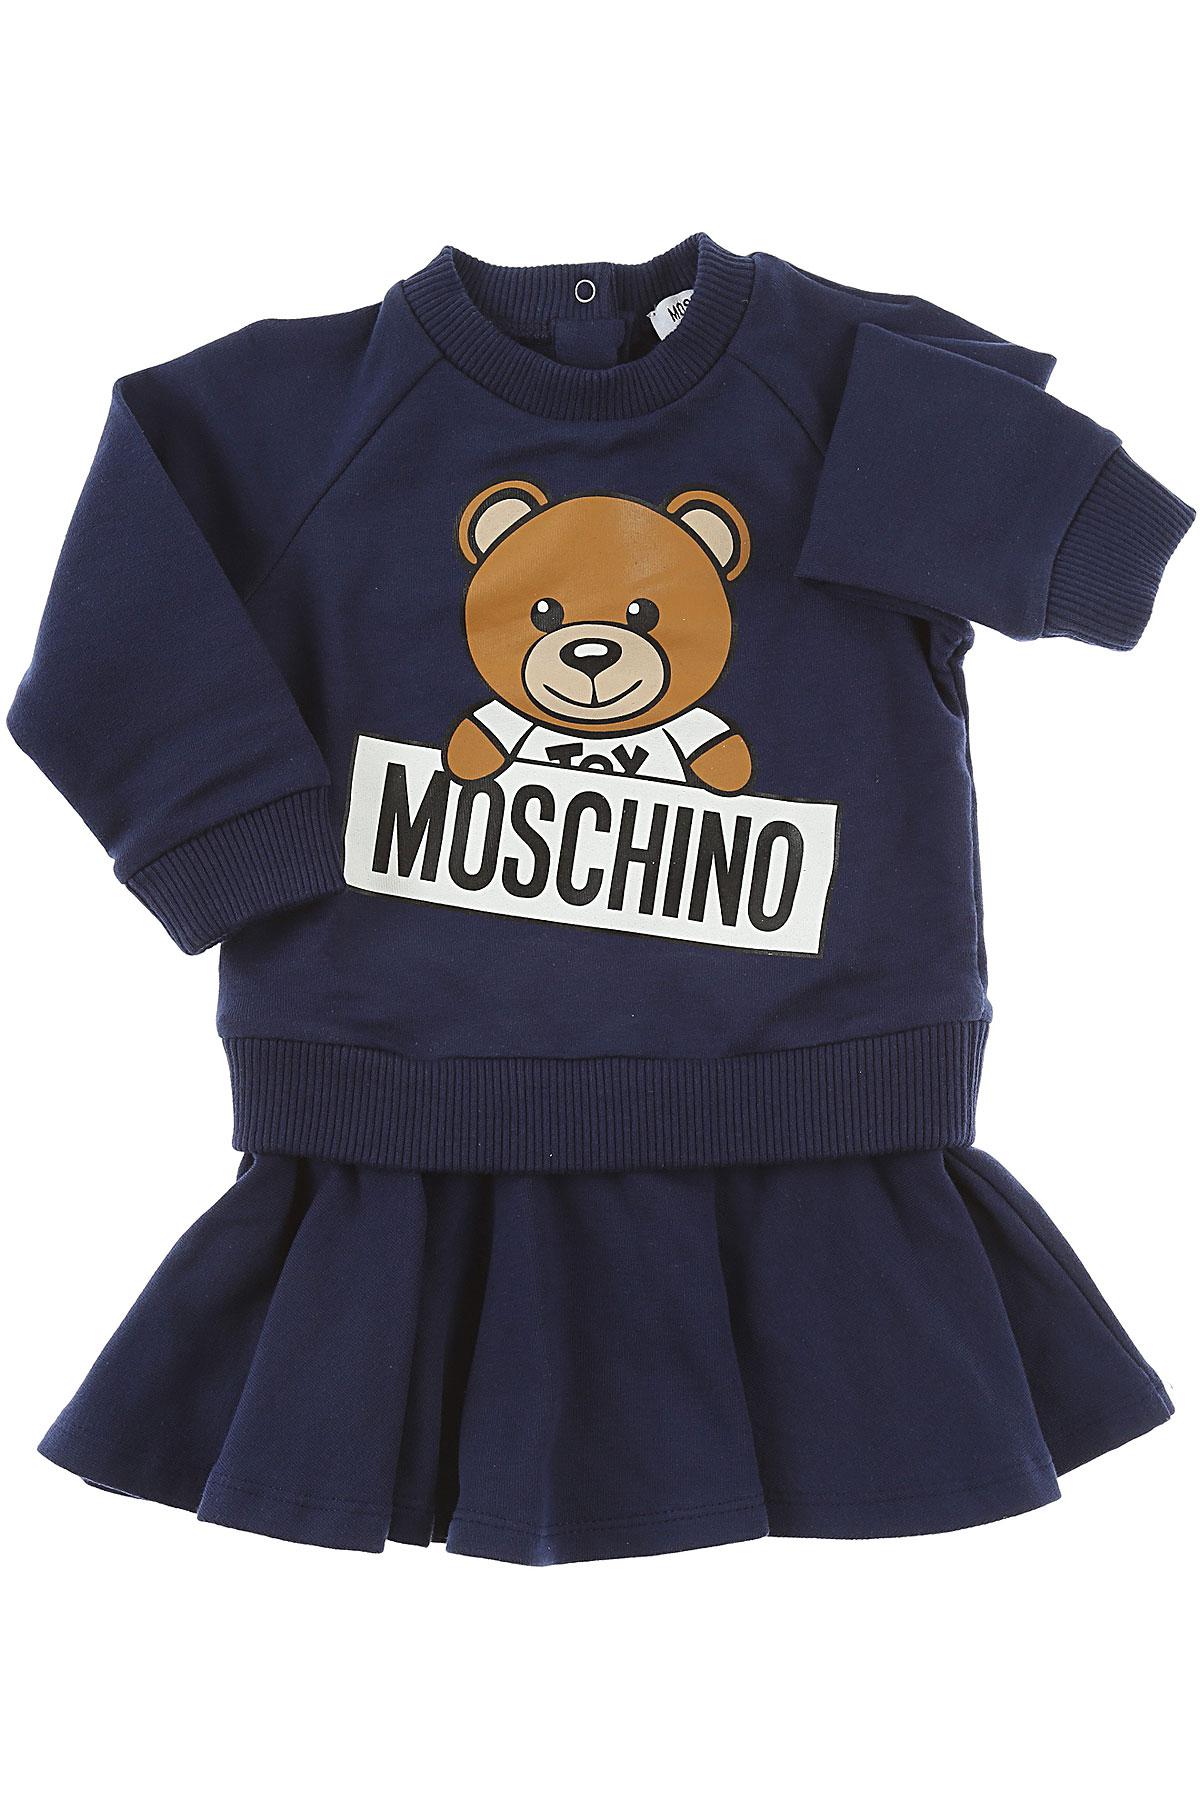 moschino baby girl dress